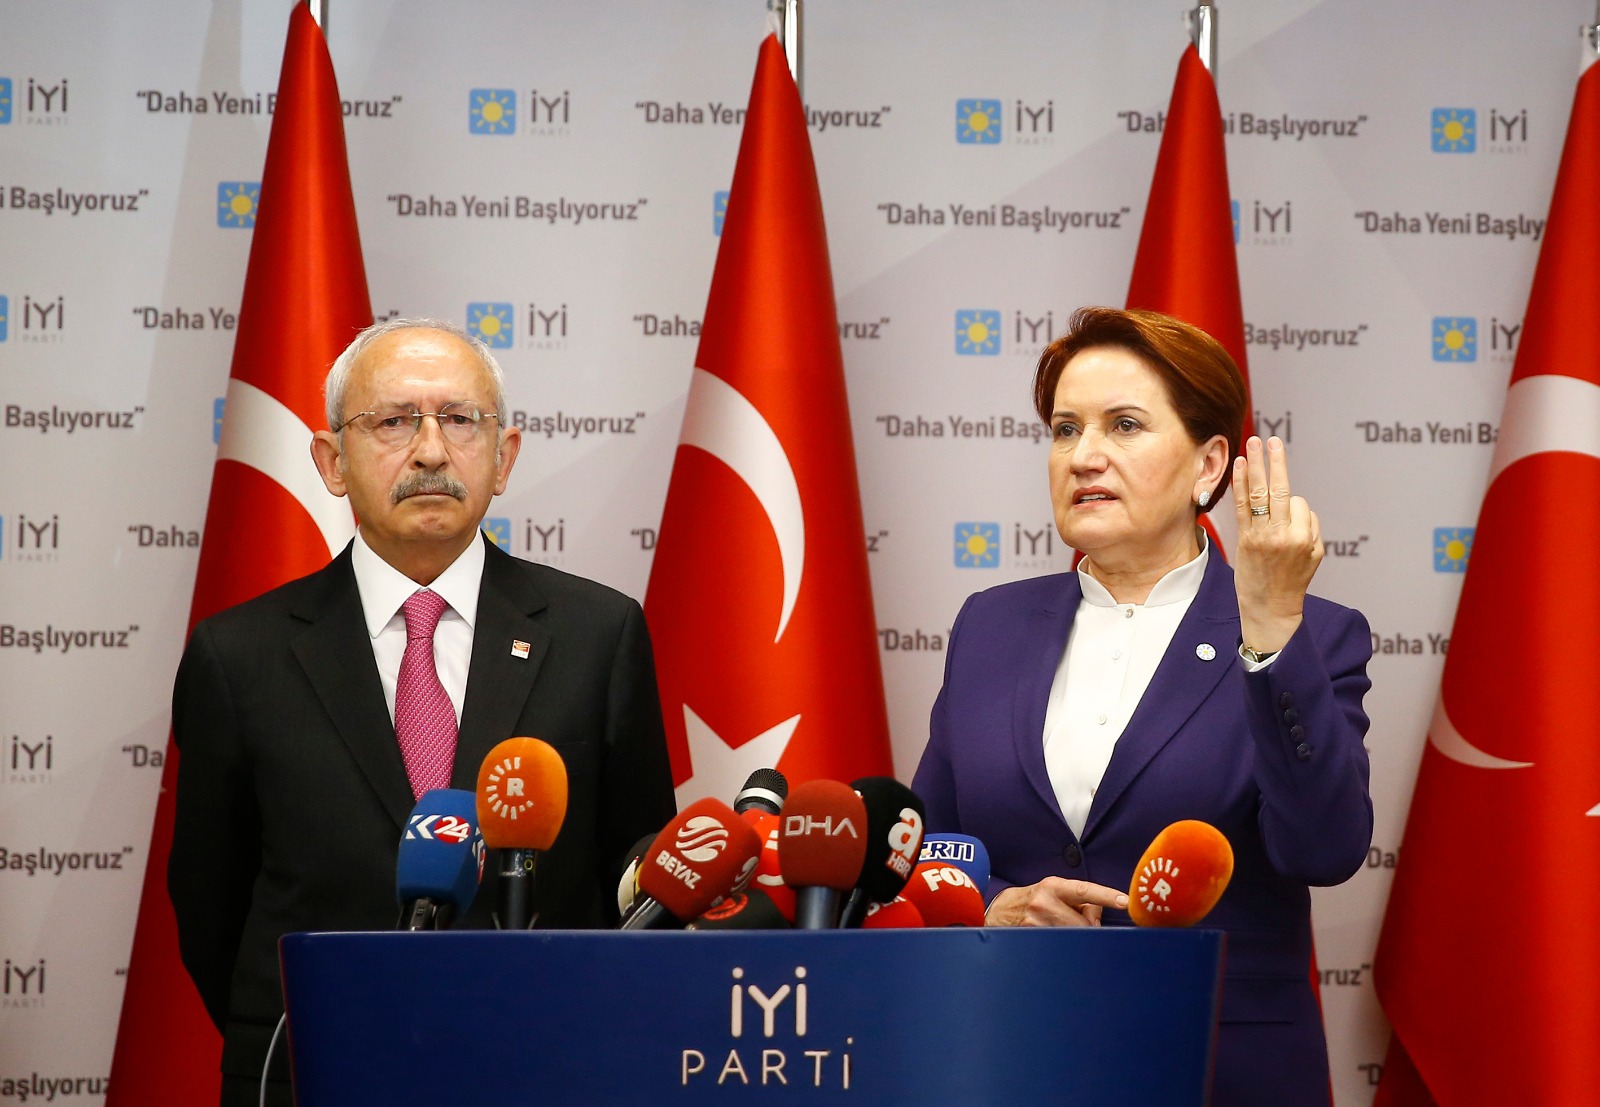 المعارضة التركية: يجب الخروج من مناخ الانتخابات بأقرب وقت